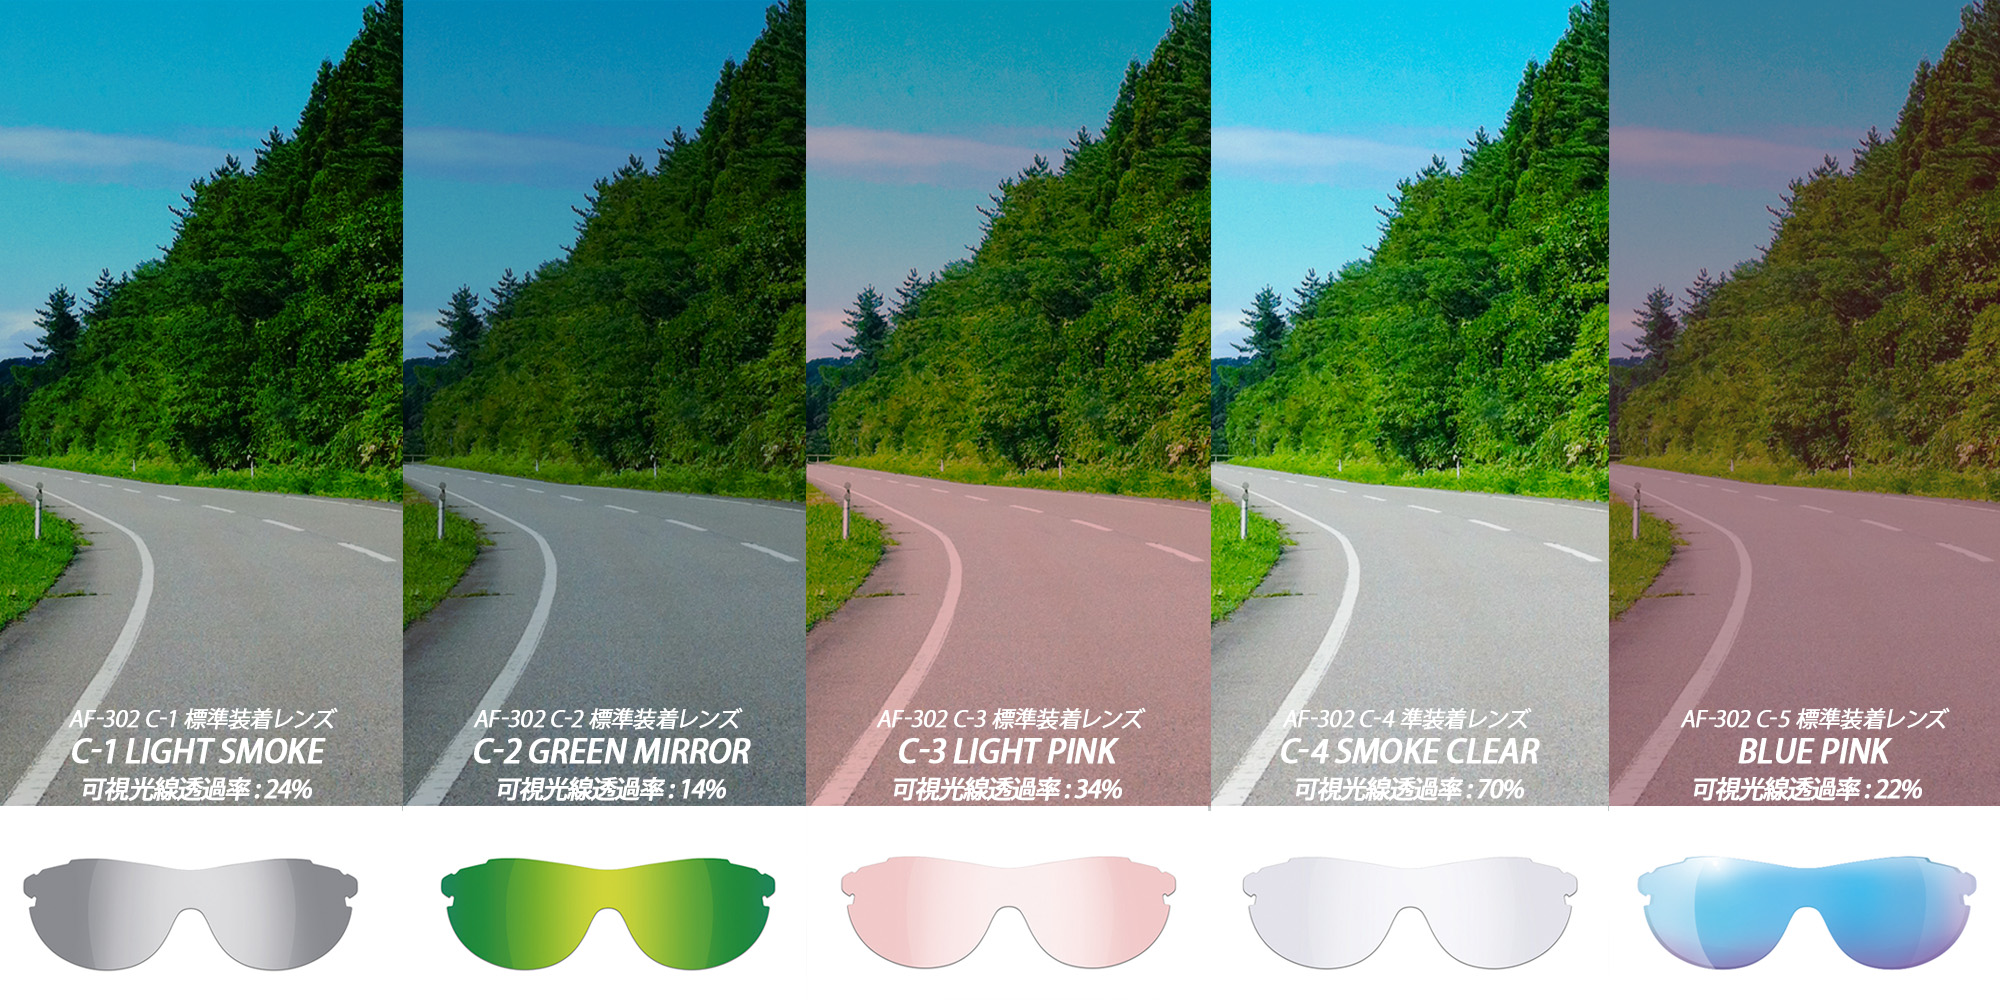 レンズの見え方比較 エアフライ標準装着レンズ  AF-301 AF-302 ランニングや自転車、ゴルフにトライアスロンなど幅広く使用可能です